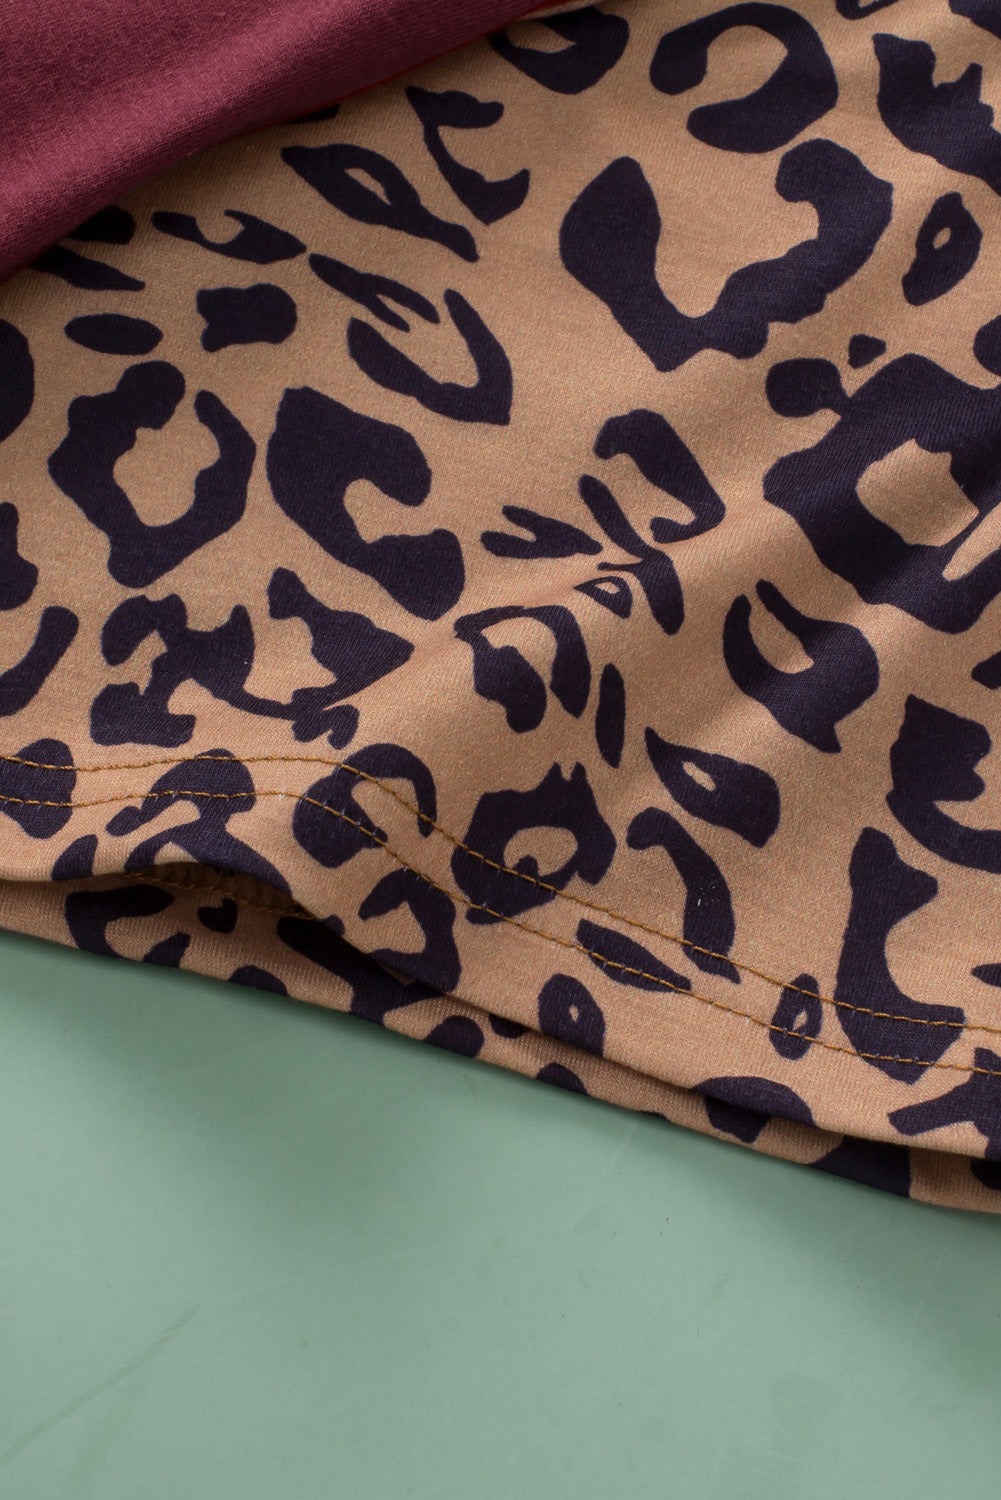 Burgunderfarbenes Plus-Size-T-Shirt mit Raglanärmeln und kontrastierendem Leopardenmuster